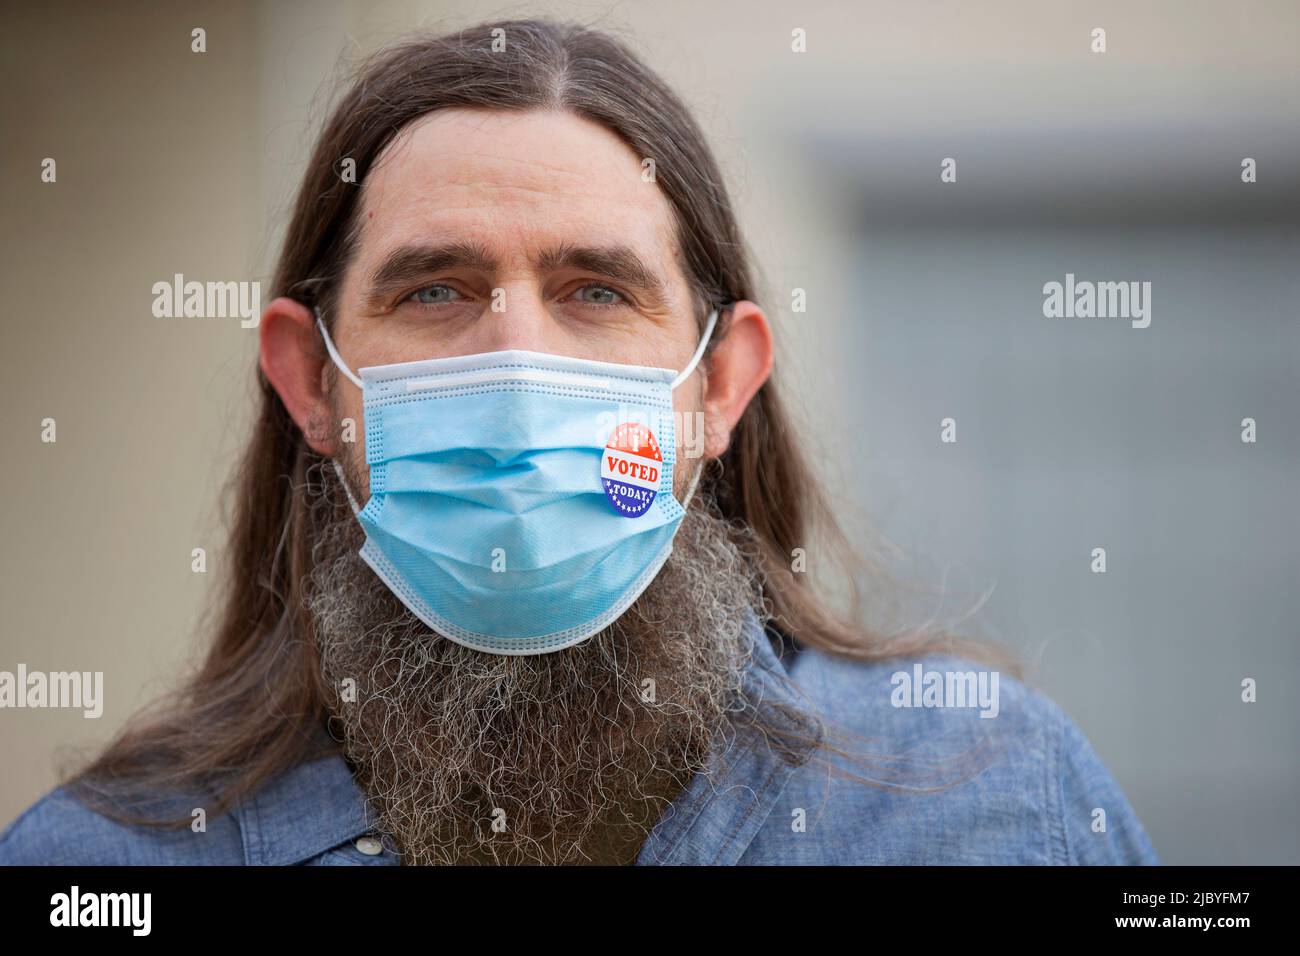 Portrait d'un homme caucasien avec de longs cheveux et une barbe complète portant un masque et un autocollant J'ai voté aujourd'hui sur le masque Banque D'Images